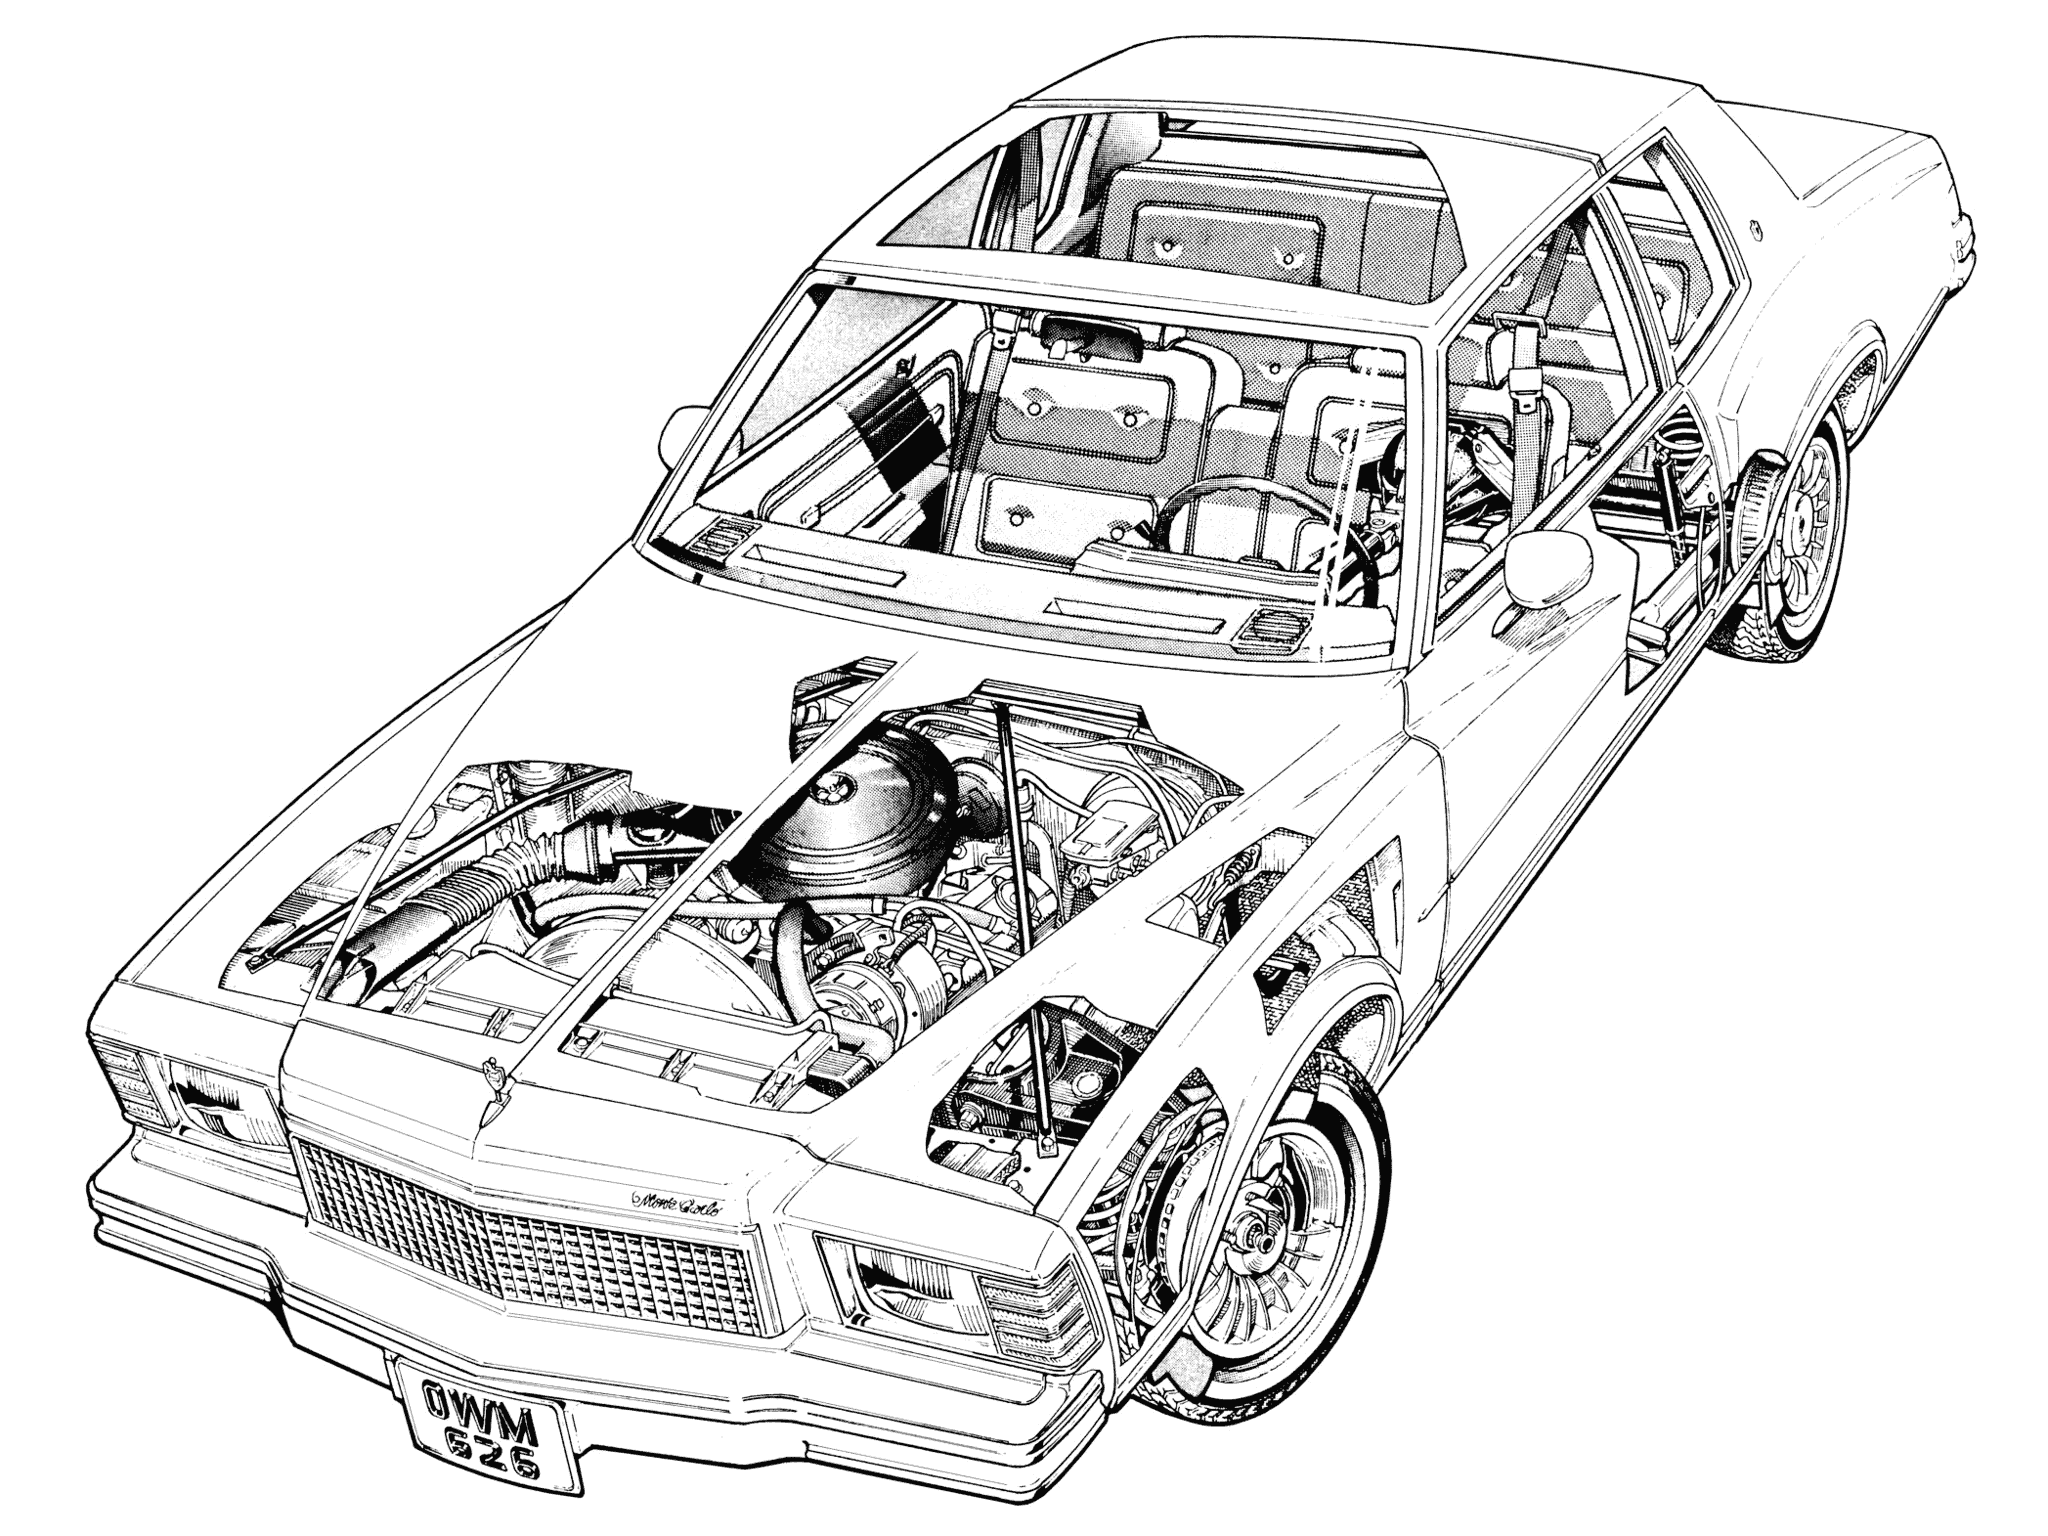 Chevrolet Monte Carlo cutaway